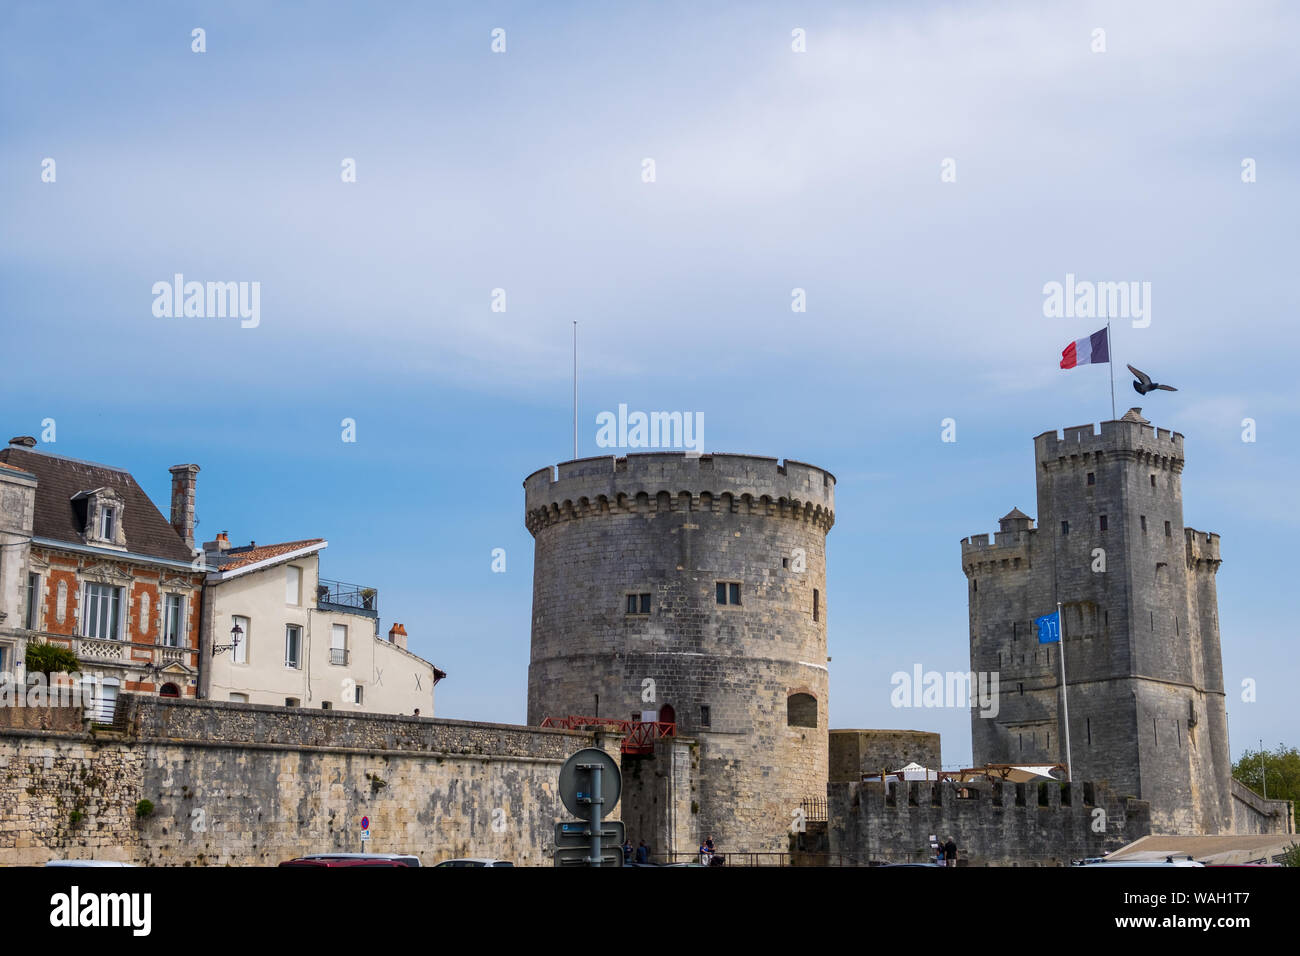 La Rochelle, Frankreich - Mai 07, 2019: Tour St Nicolas und de la Chaine in Vieux Port La Rochelle, Frankreich Stockfoto